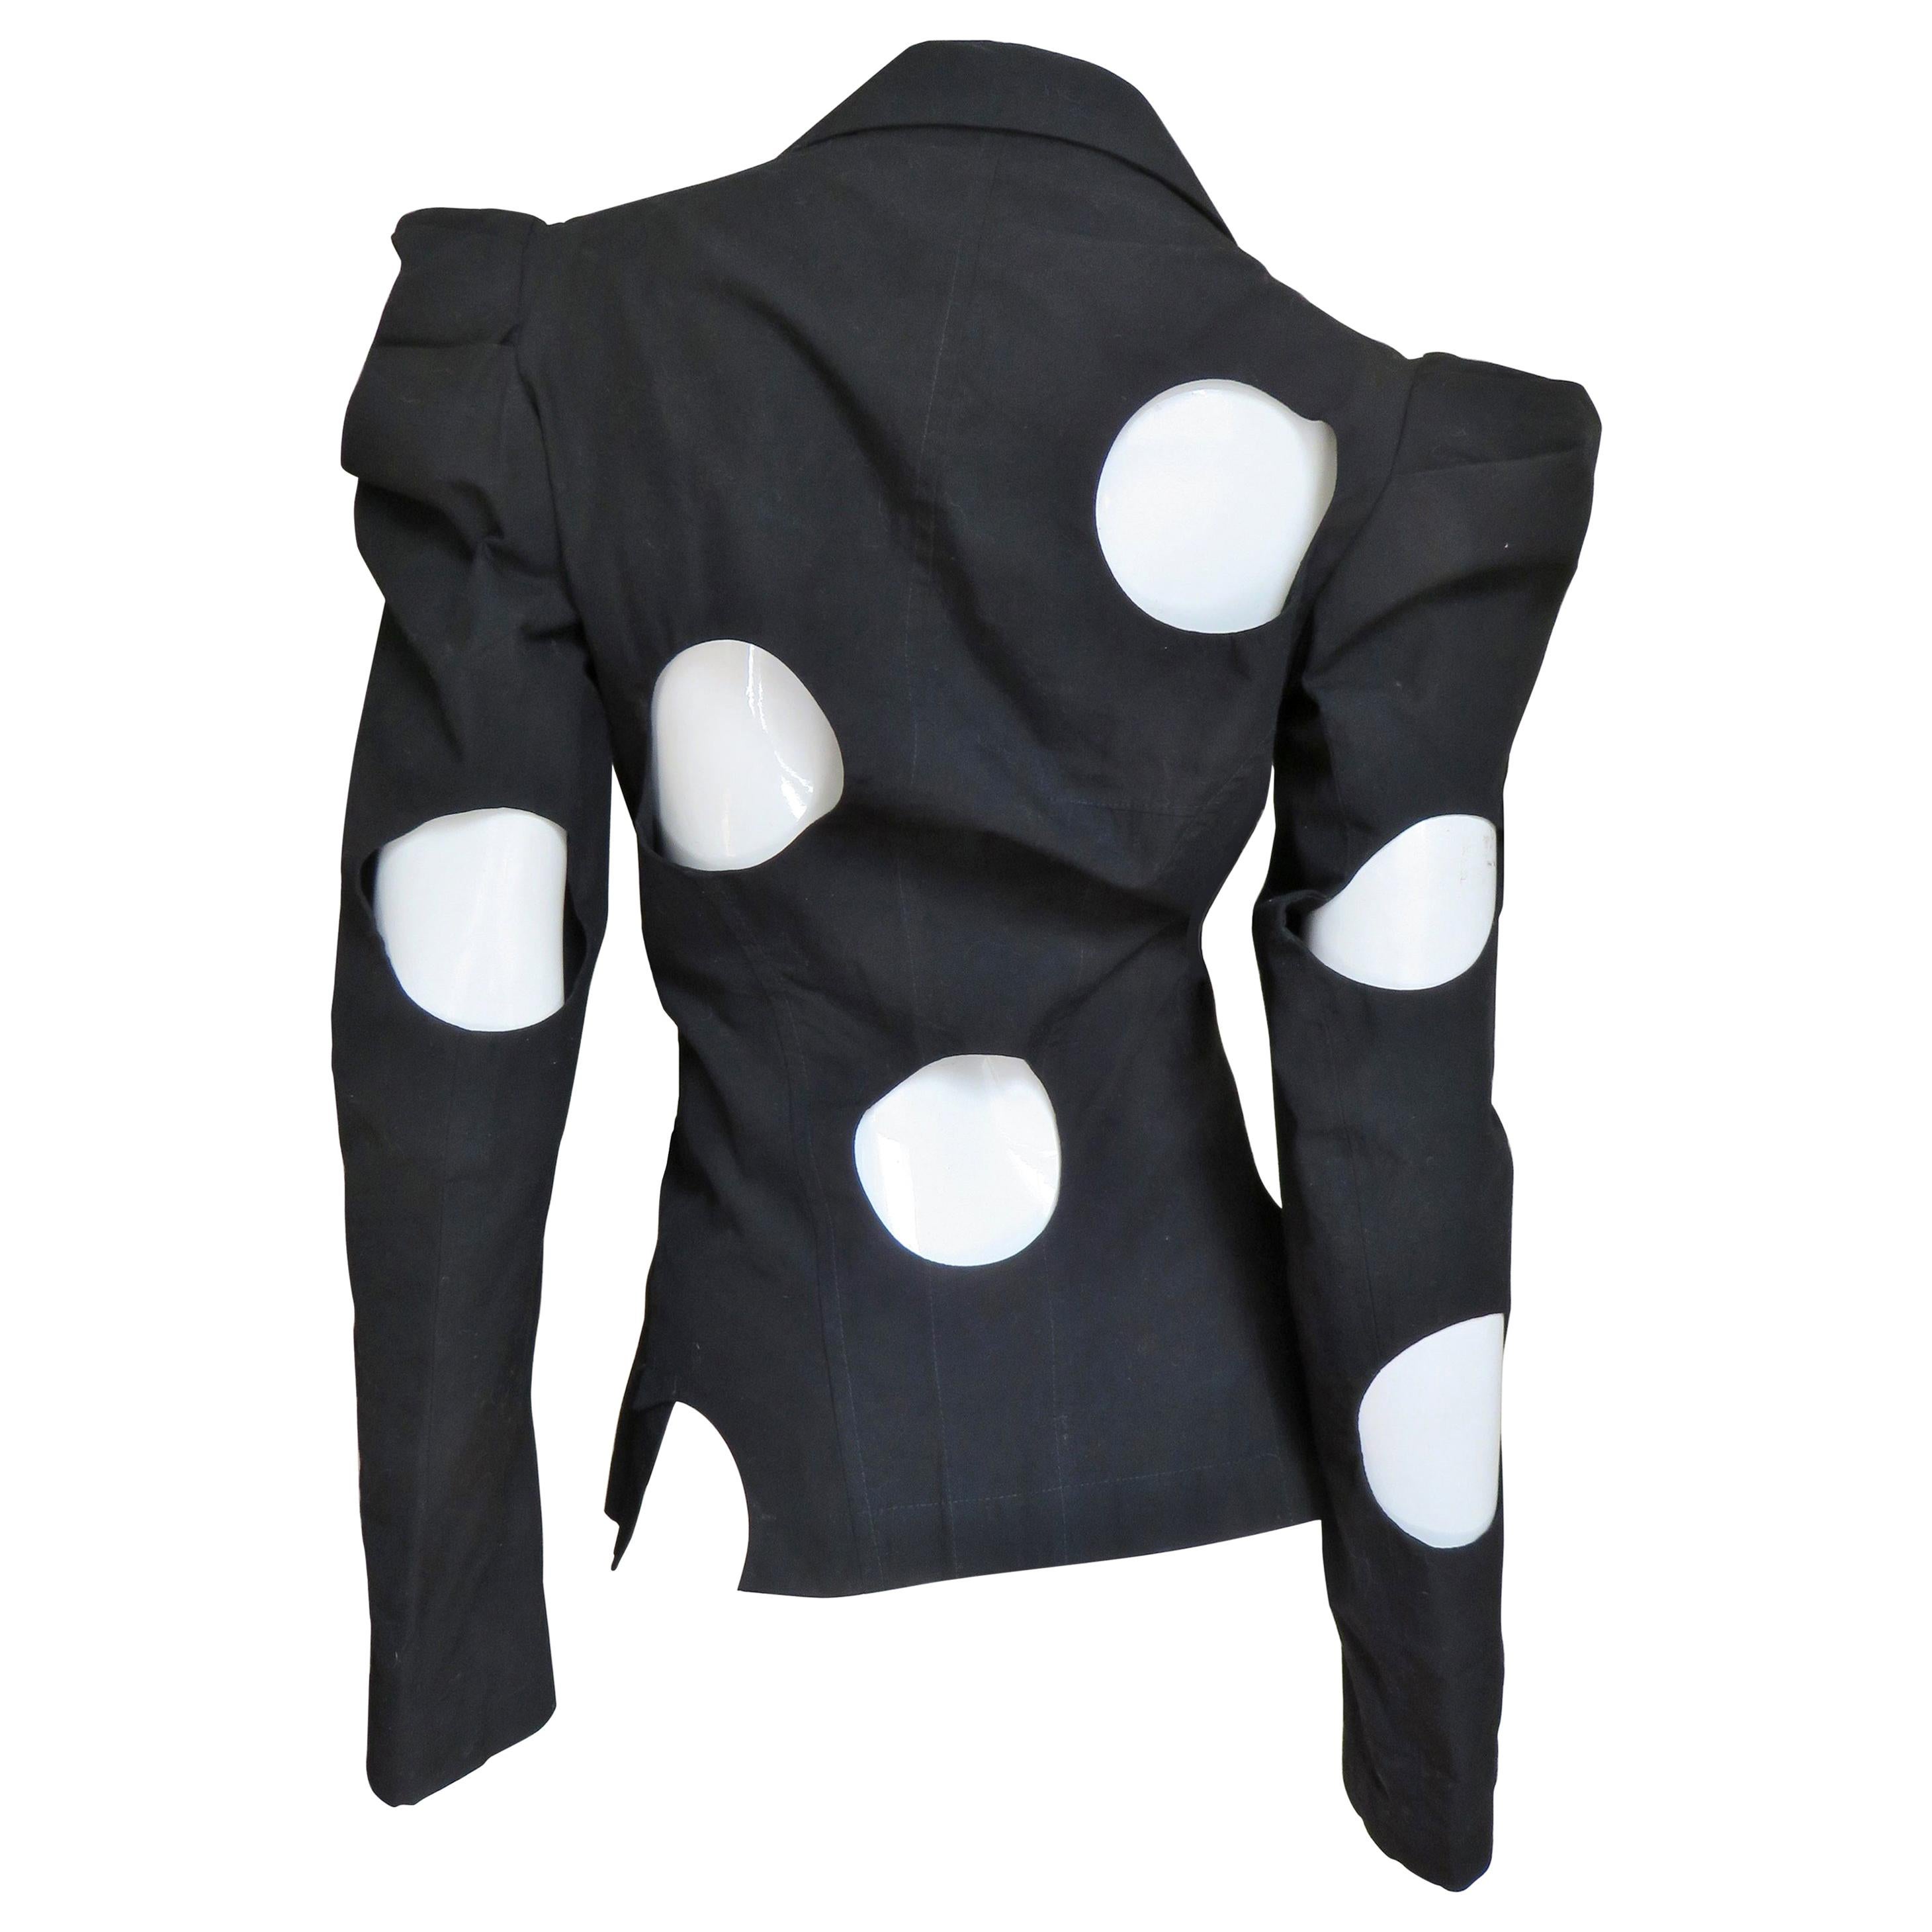 Yohji Yamamoto Jacket with Circle Cut outs For Sale